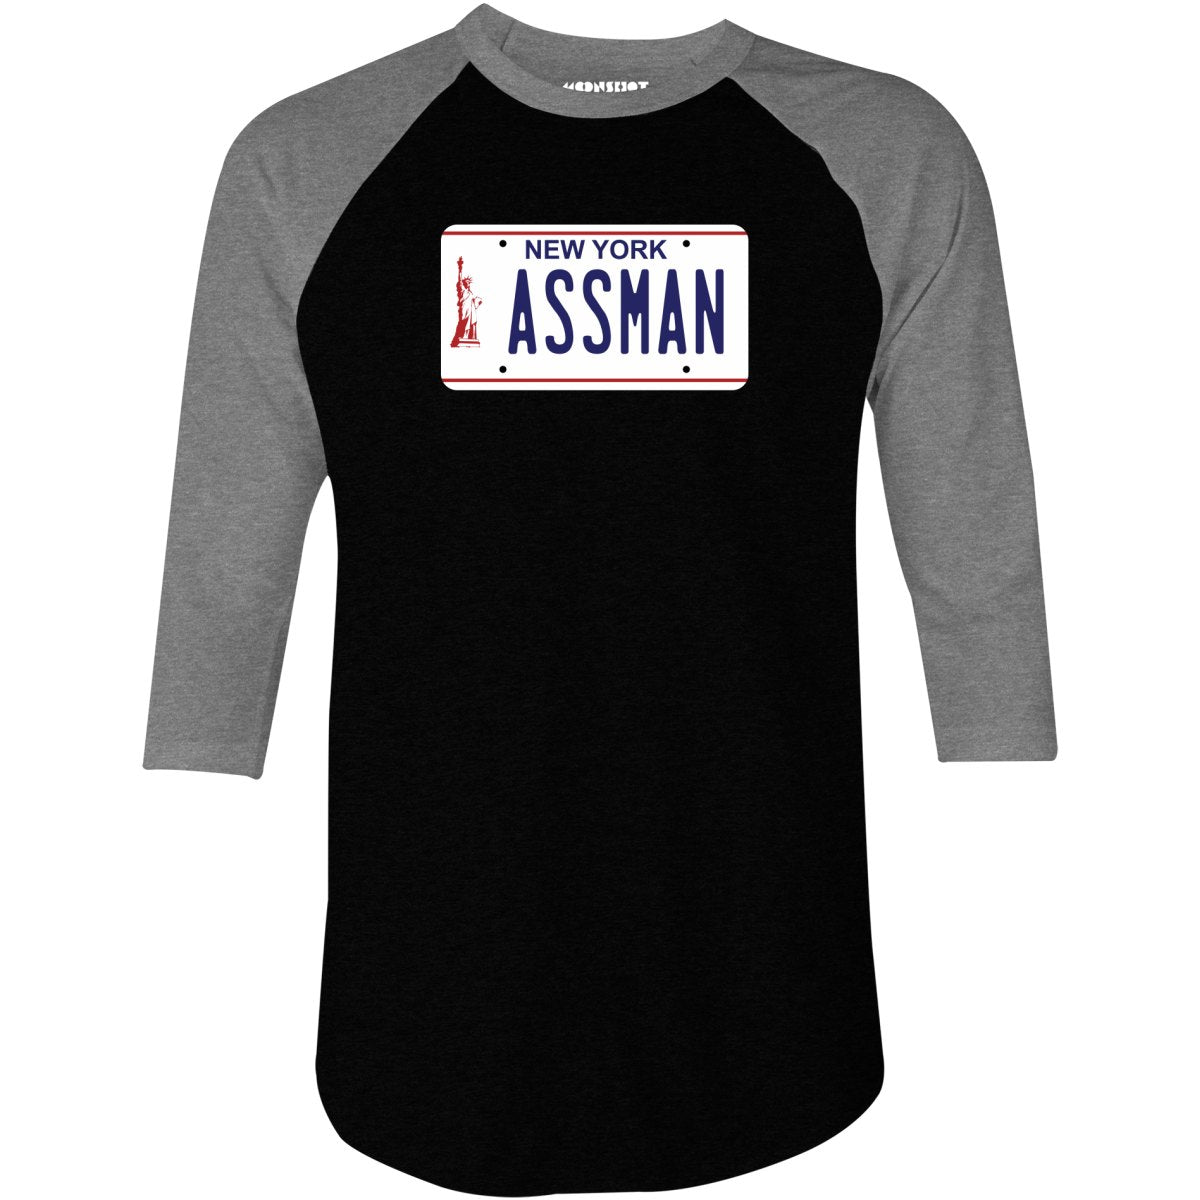 Assman New York License Plate - 3/4 Sleeve Raglan T-Shirt